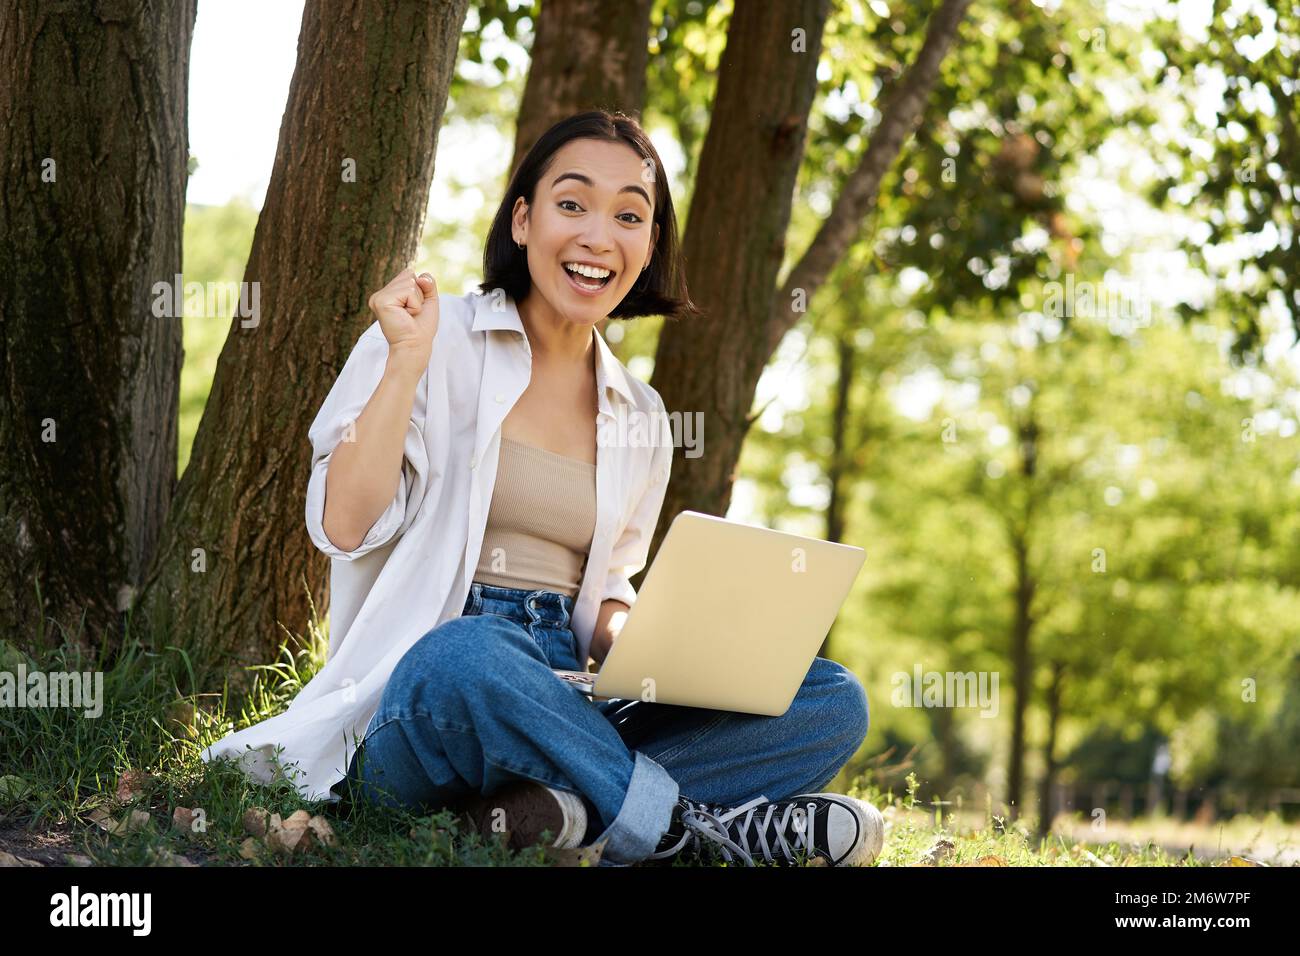 Giovane ragazza asiatica entusiasta, seduta con il portatile accanto all'albero in verde parco soleggiato, festeggia, trionfa e sorridente Foto Stock